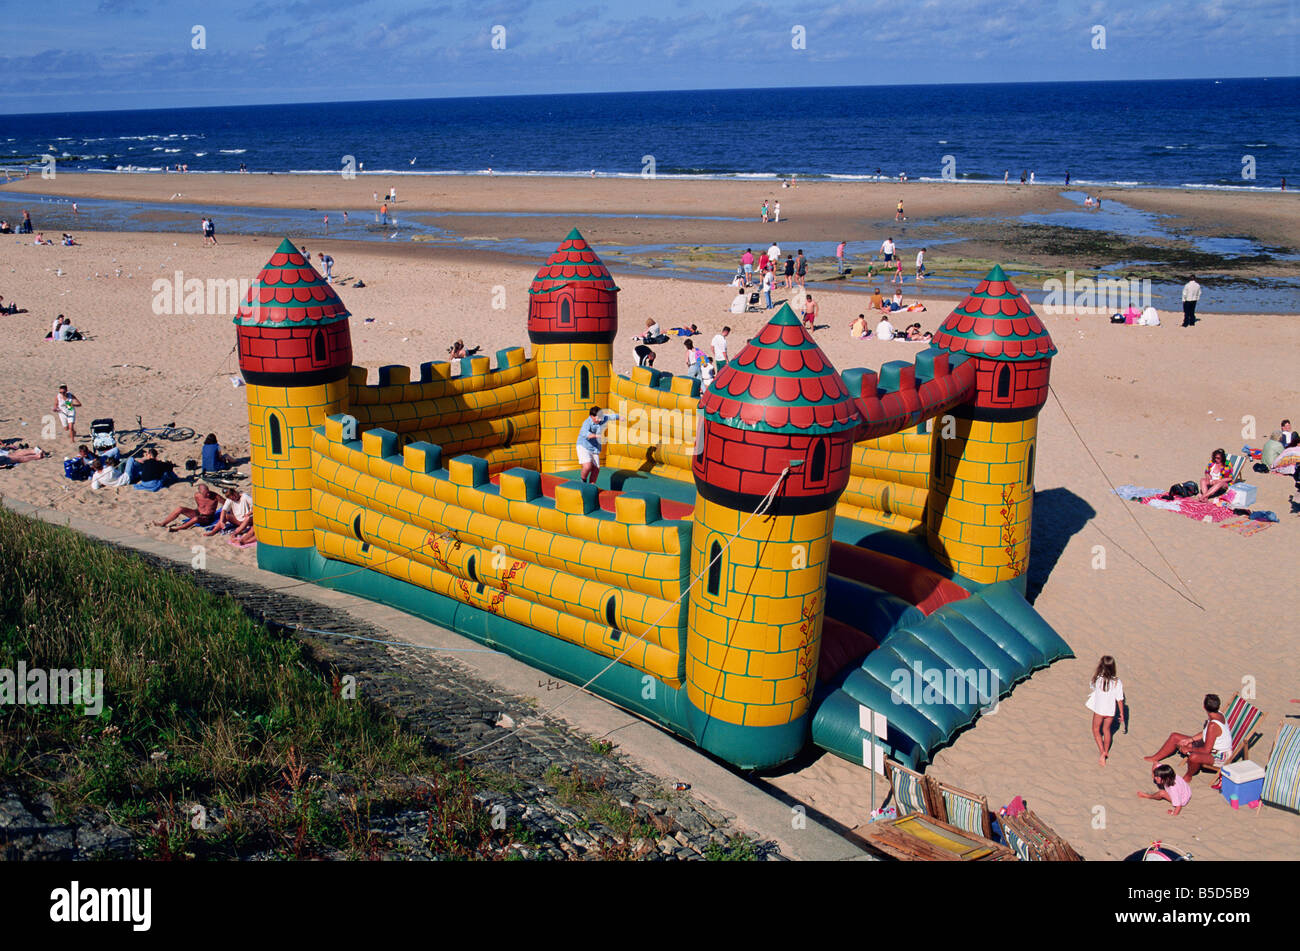 Château gonflable sur la plage de Whitley Bay Tyneside, Angleterre Royaume-uni J Pottage modèle ne libération Banque D'Images